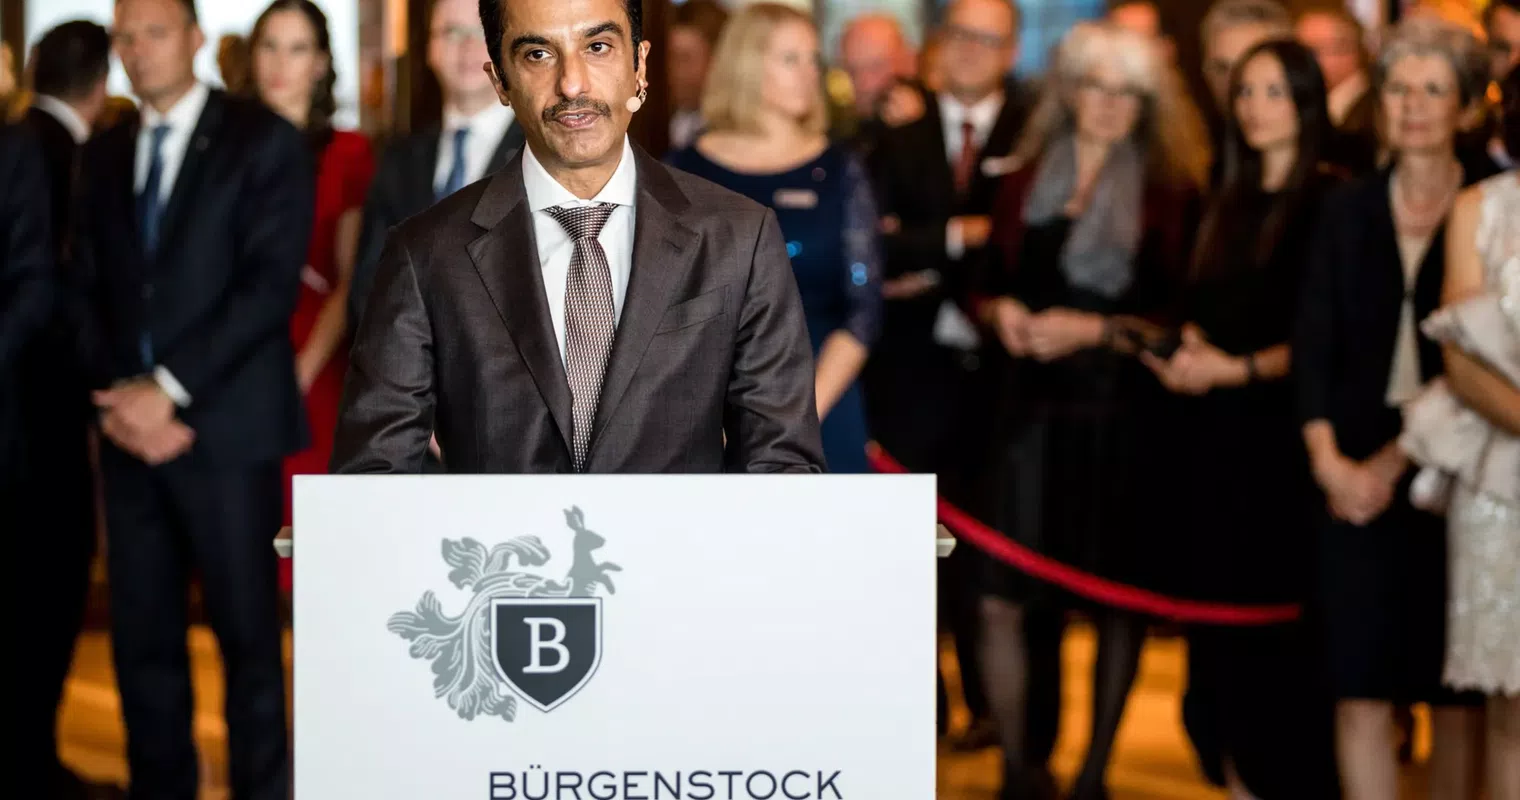 Bürgenstock-Chef zu Haftstrafe verurteilt